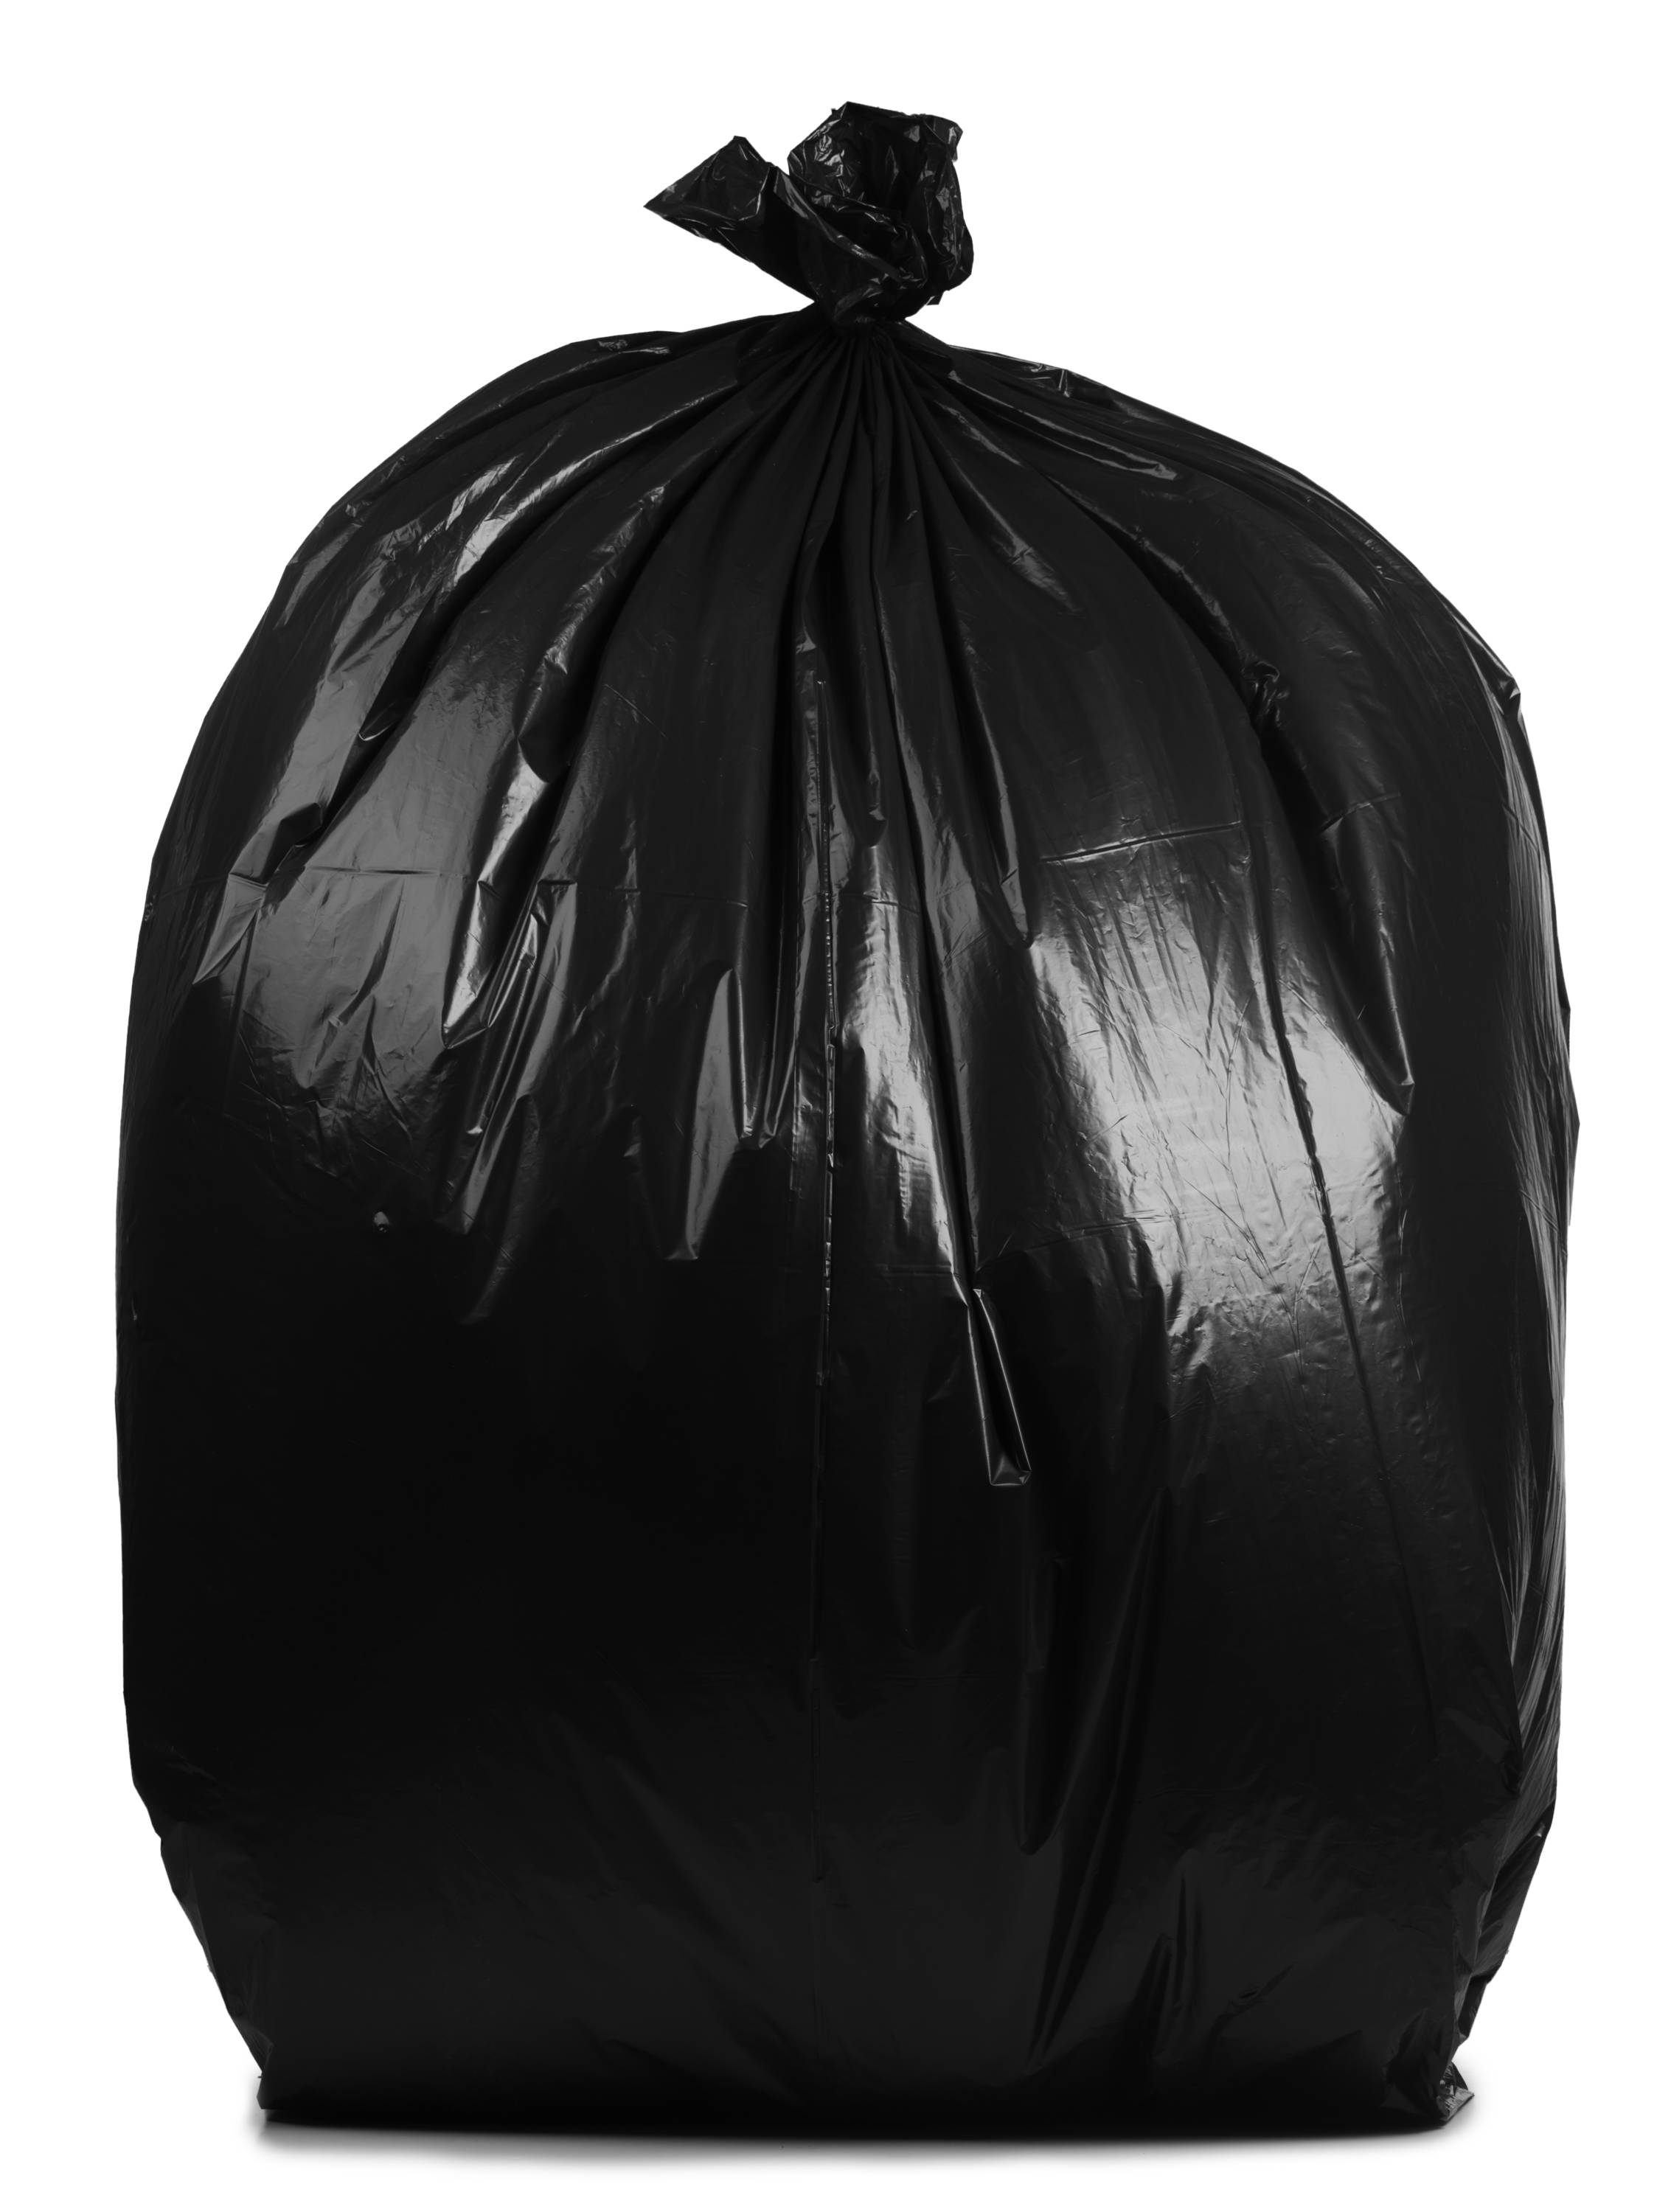 Car Seat Back rubbish Black Bag Trash Clean Garbage Bag Hanger Holder Container 